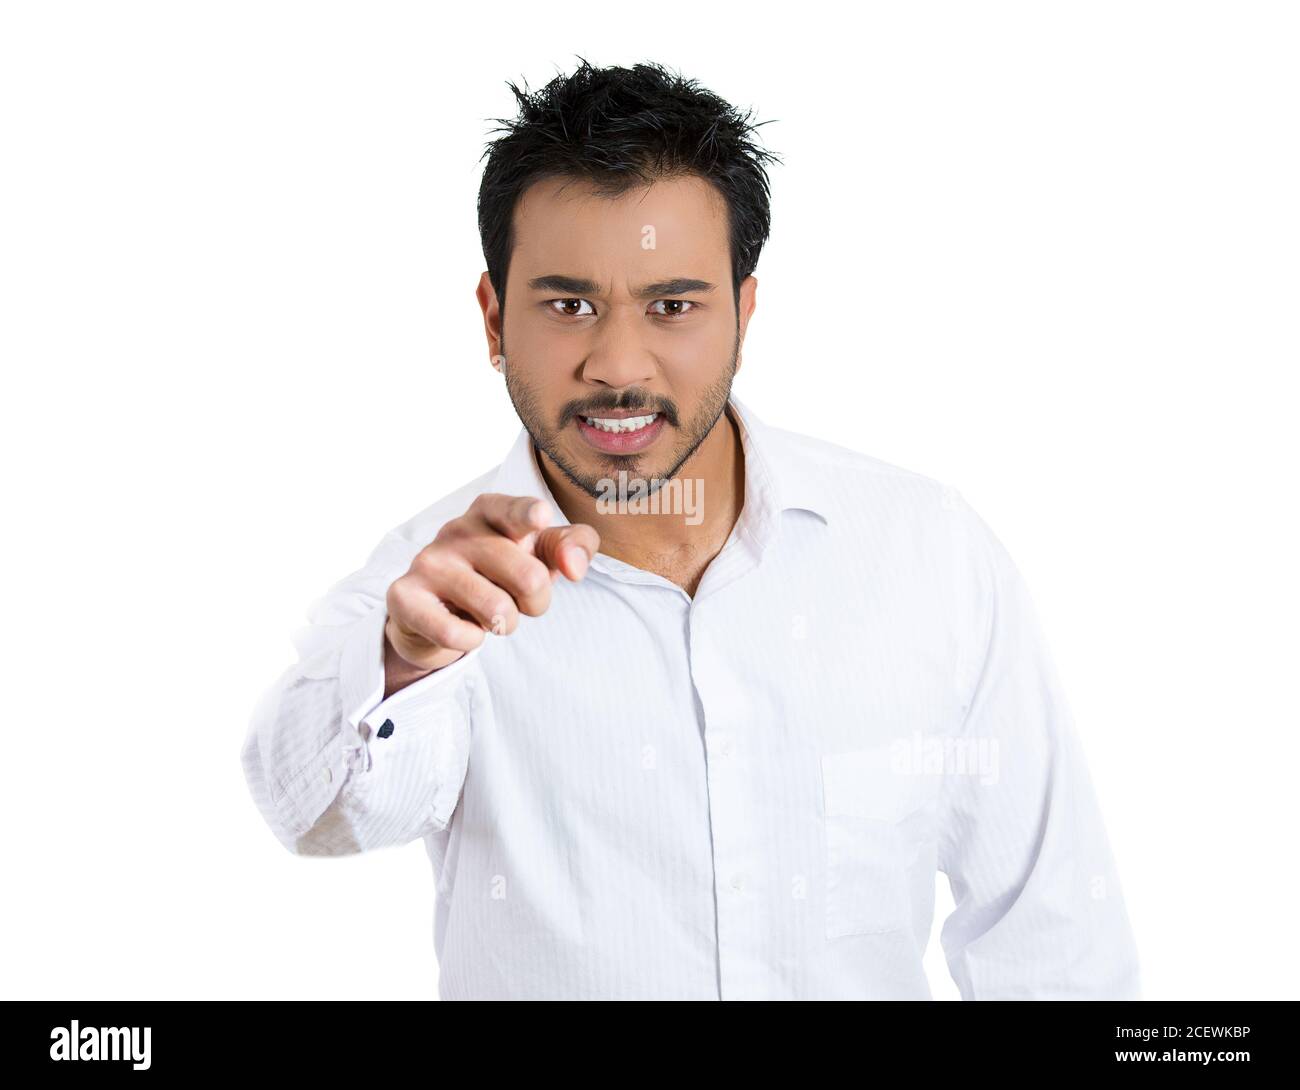 Ritratto closeup di un giovane infelice, molto arrabbiato, agitato, puntando con il dito, isolato su sfondo bianco. Emozione umana negativa faci Foto Stock